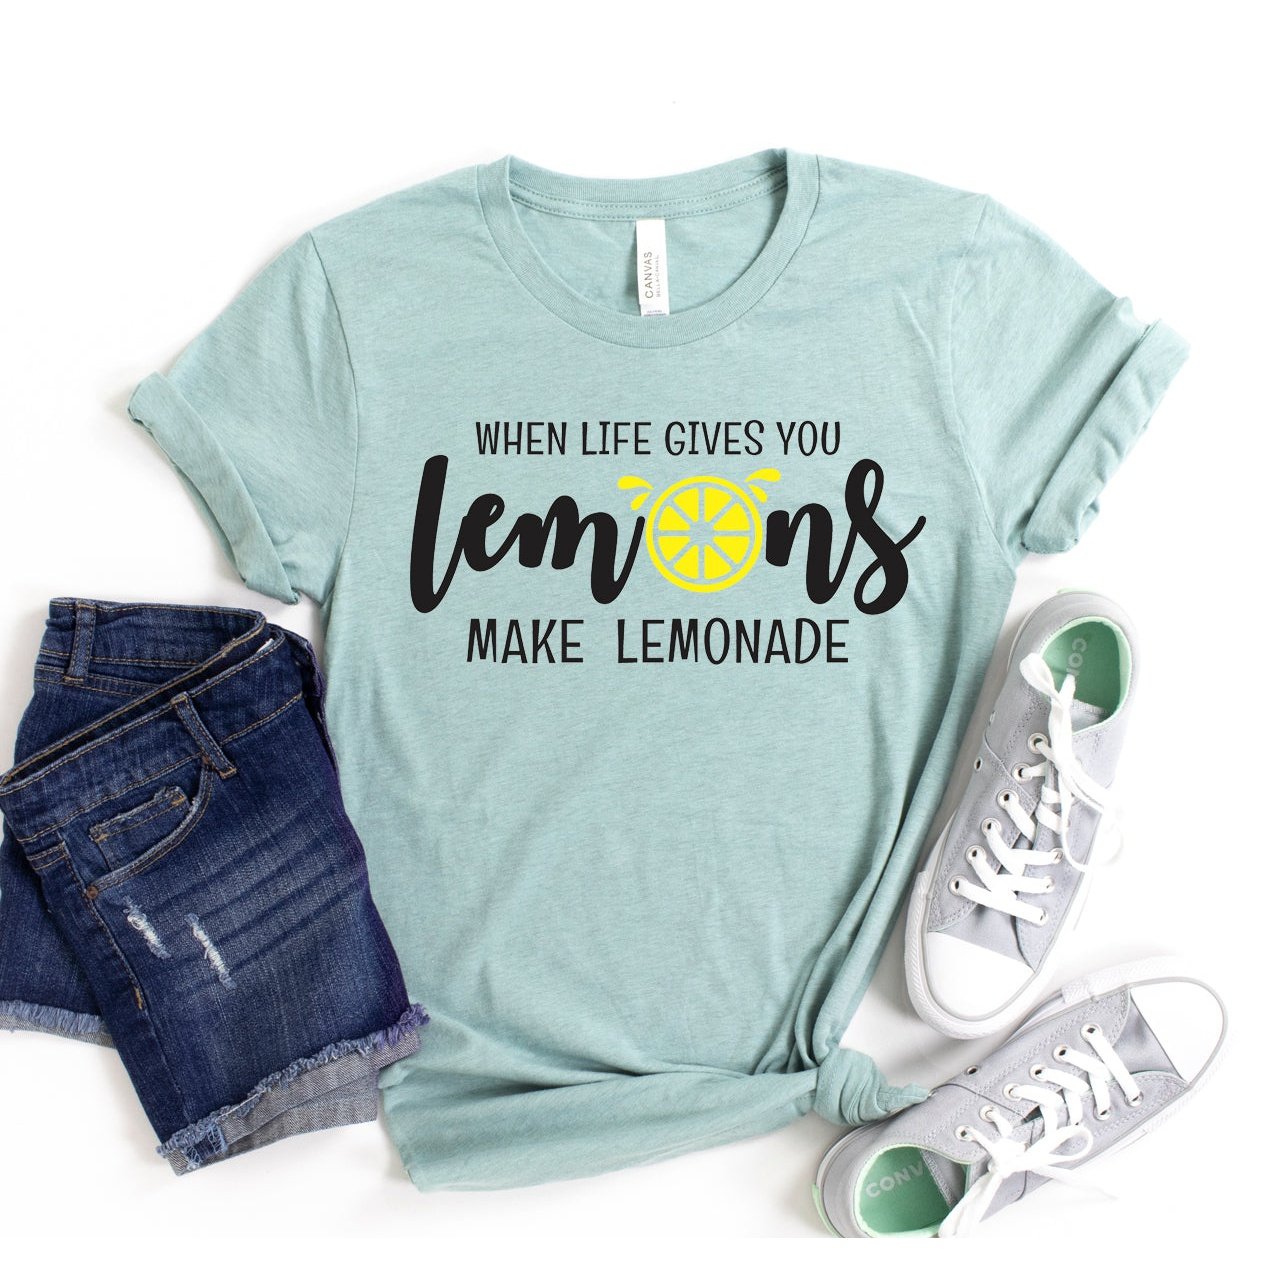 When Life Gives You Lemons Make Lemonade T-shirt - Fortunate Lemon Shop